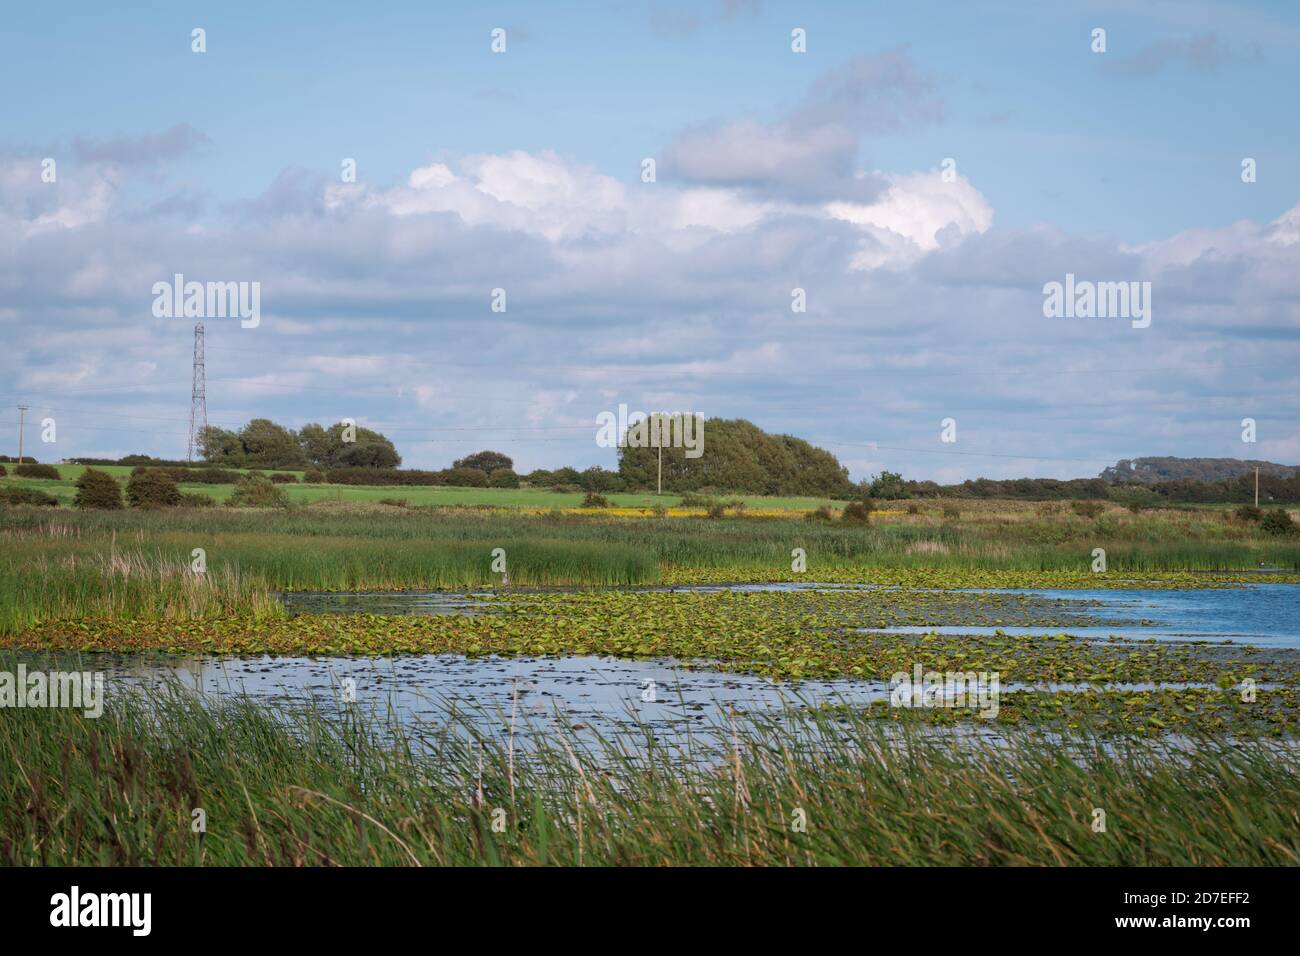 Die Landschaft des Marton Mere Local Nature Reserve in Blackpool zeigt den See, Schilfbetten und Wildtiere Stockfoto